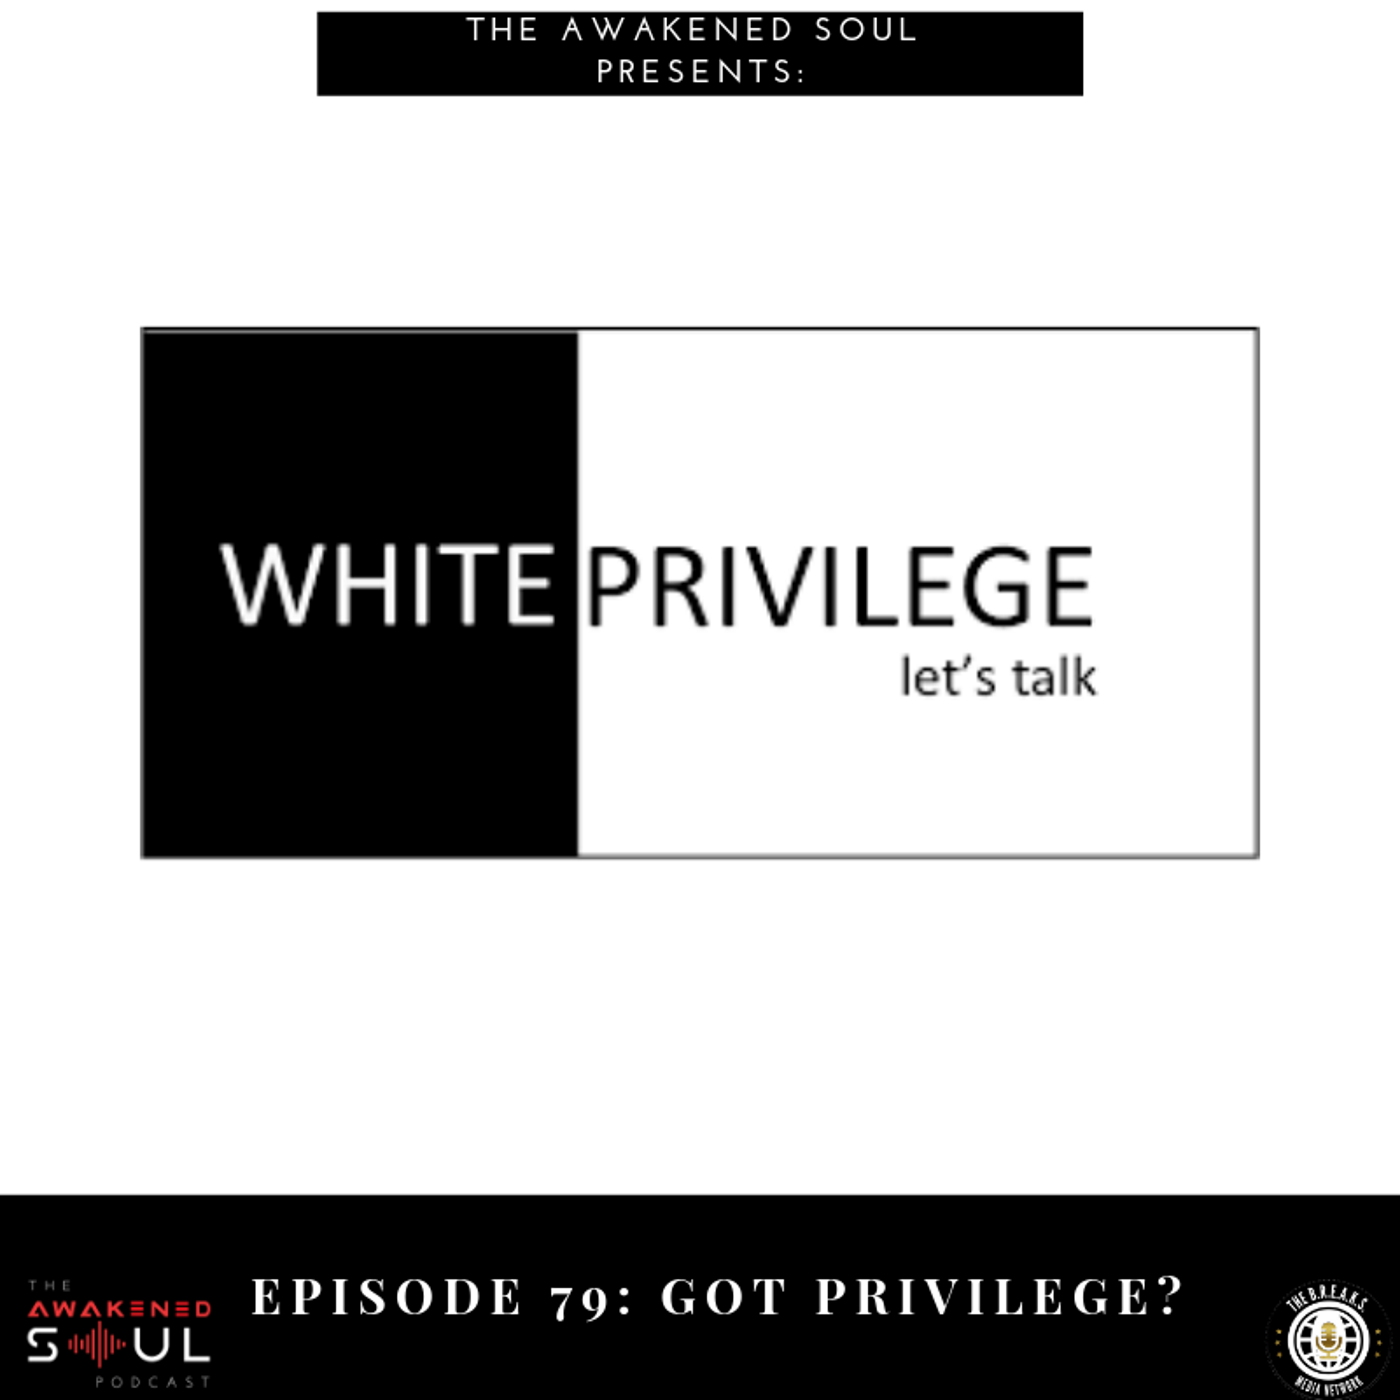 Episode 79: Got Privilege?